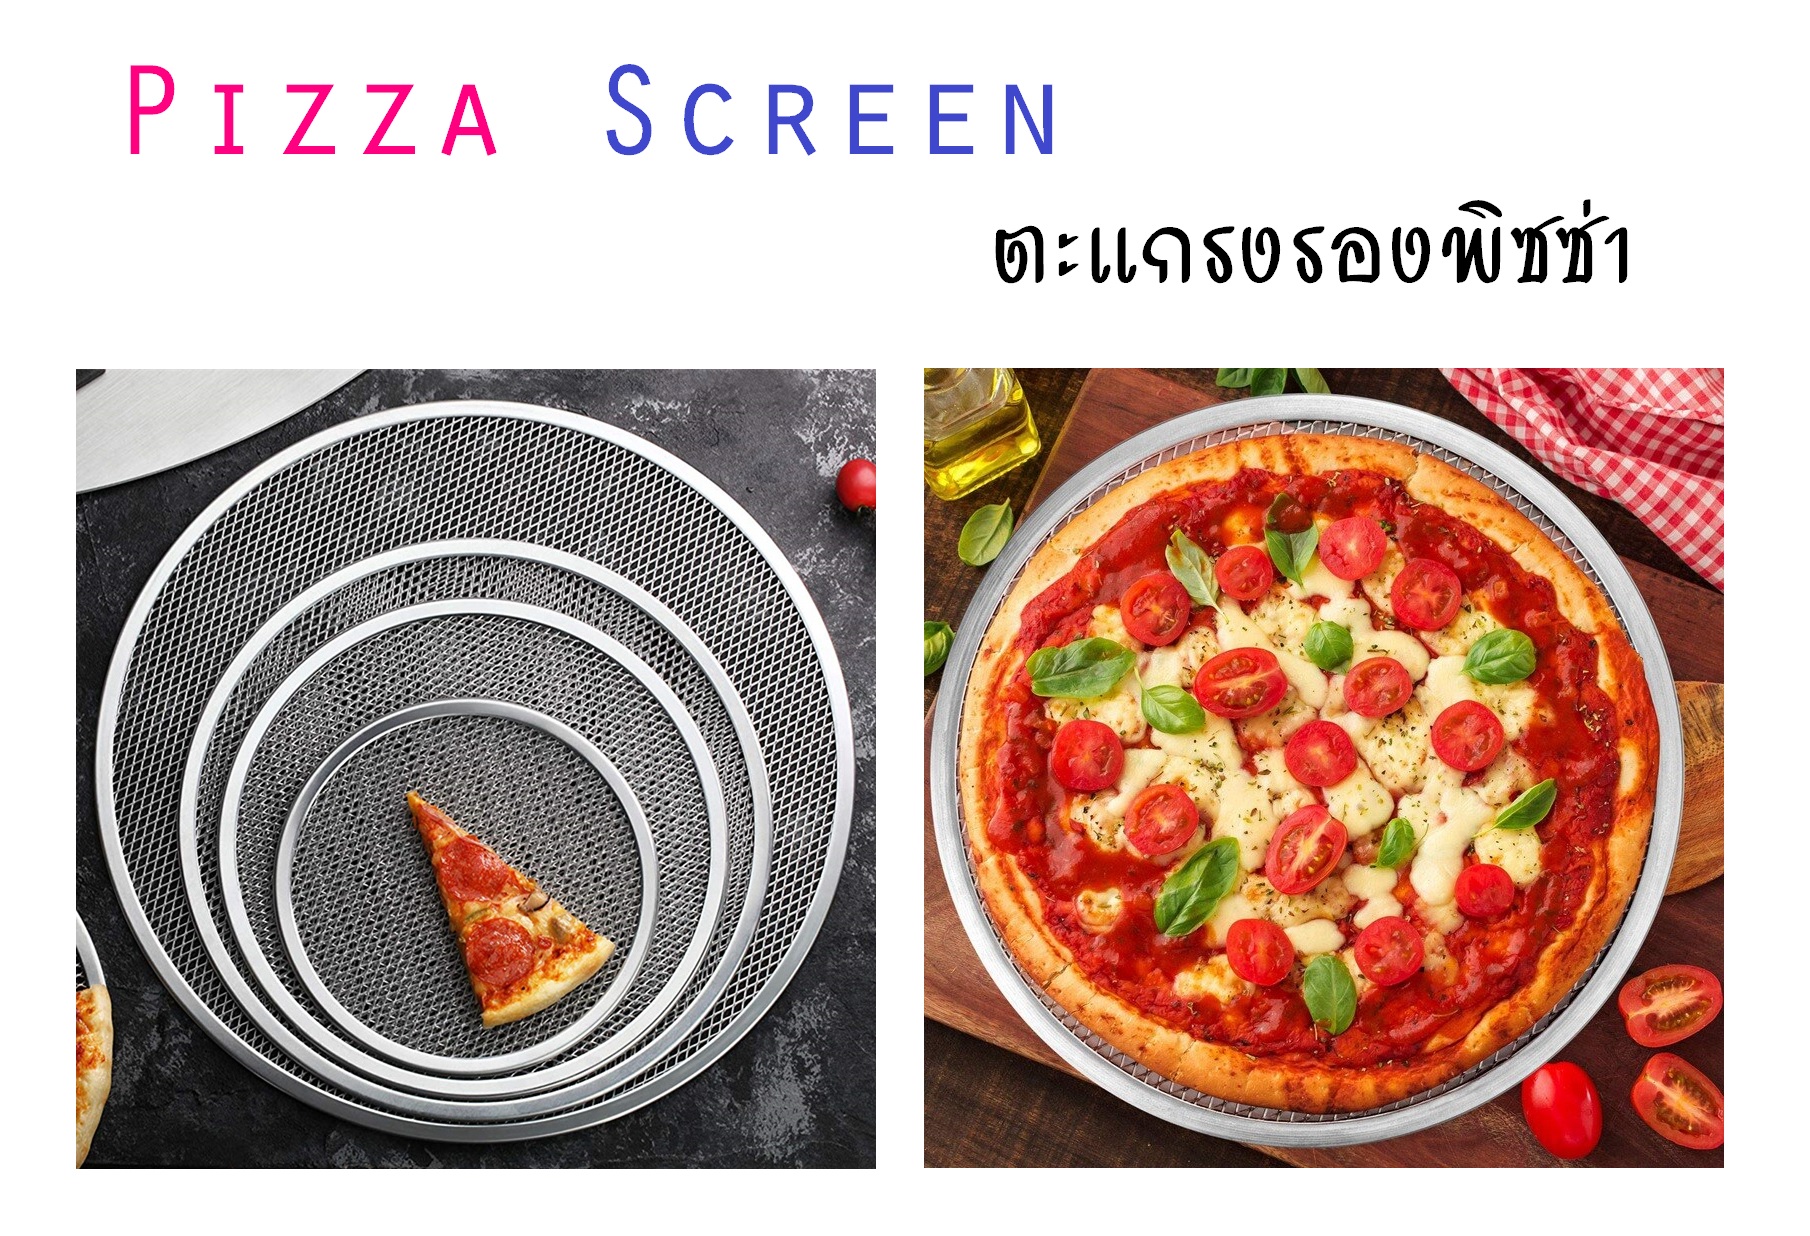 ตะแกรงพิซซ่า ตะแกรงอบพิซซ่า ตะแกรงวางพิซซ่า ถาดพิซซ่า ตะแกรงรองพิซซ่า ถาดพิซซ่าแบบตะแกรง อลูมิเนียม Pizza Screen